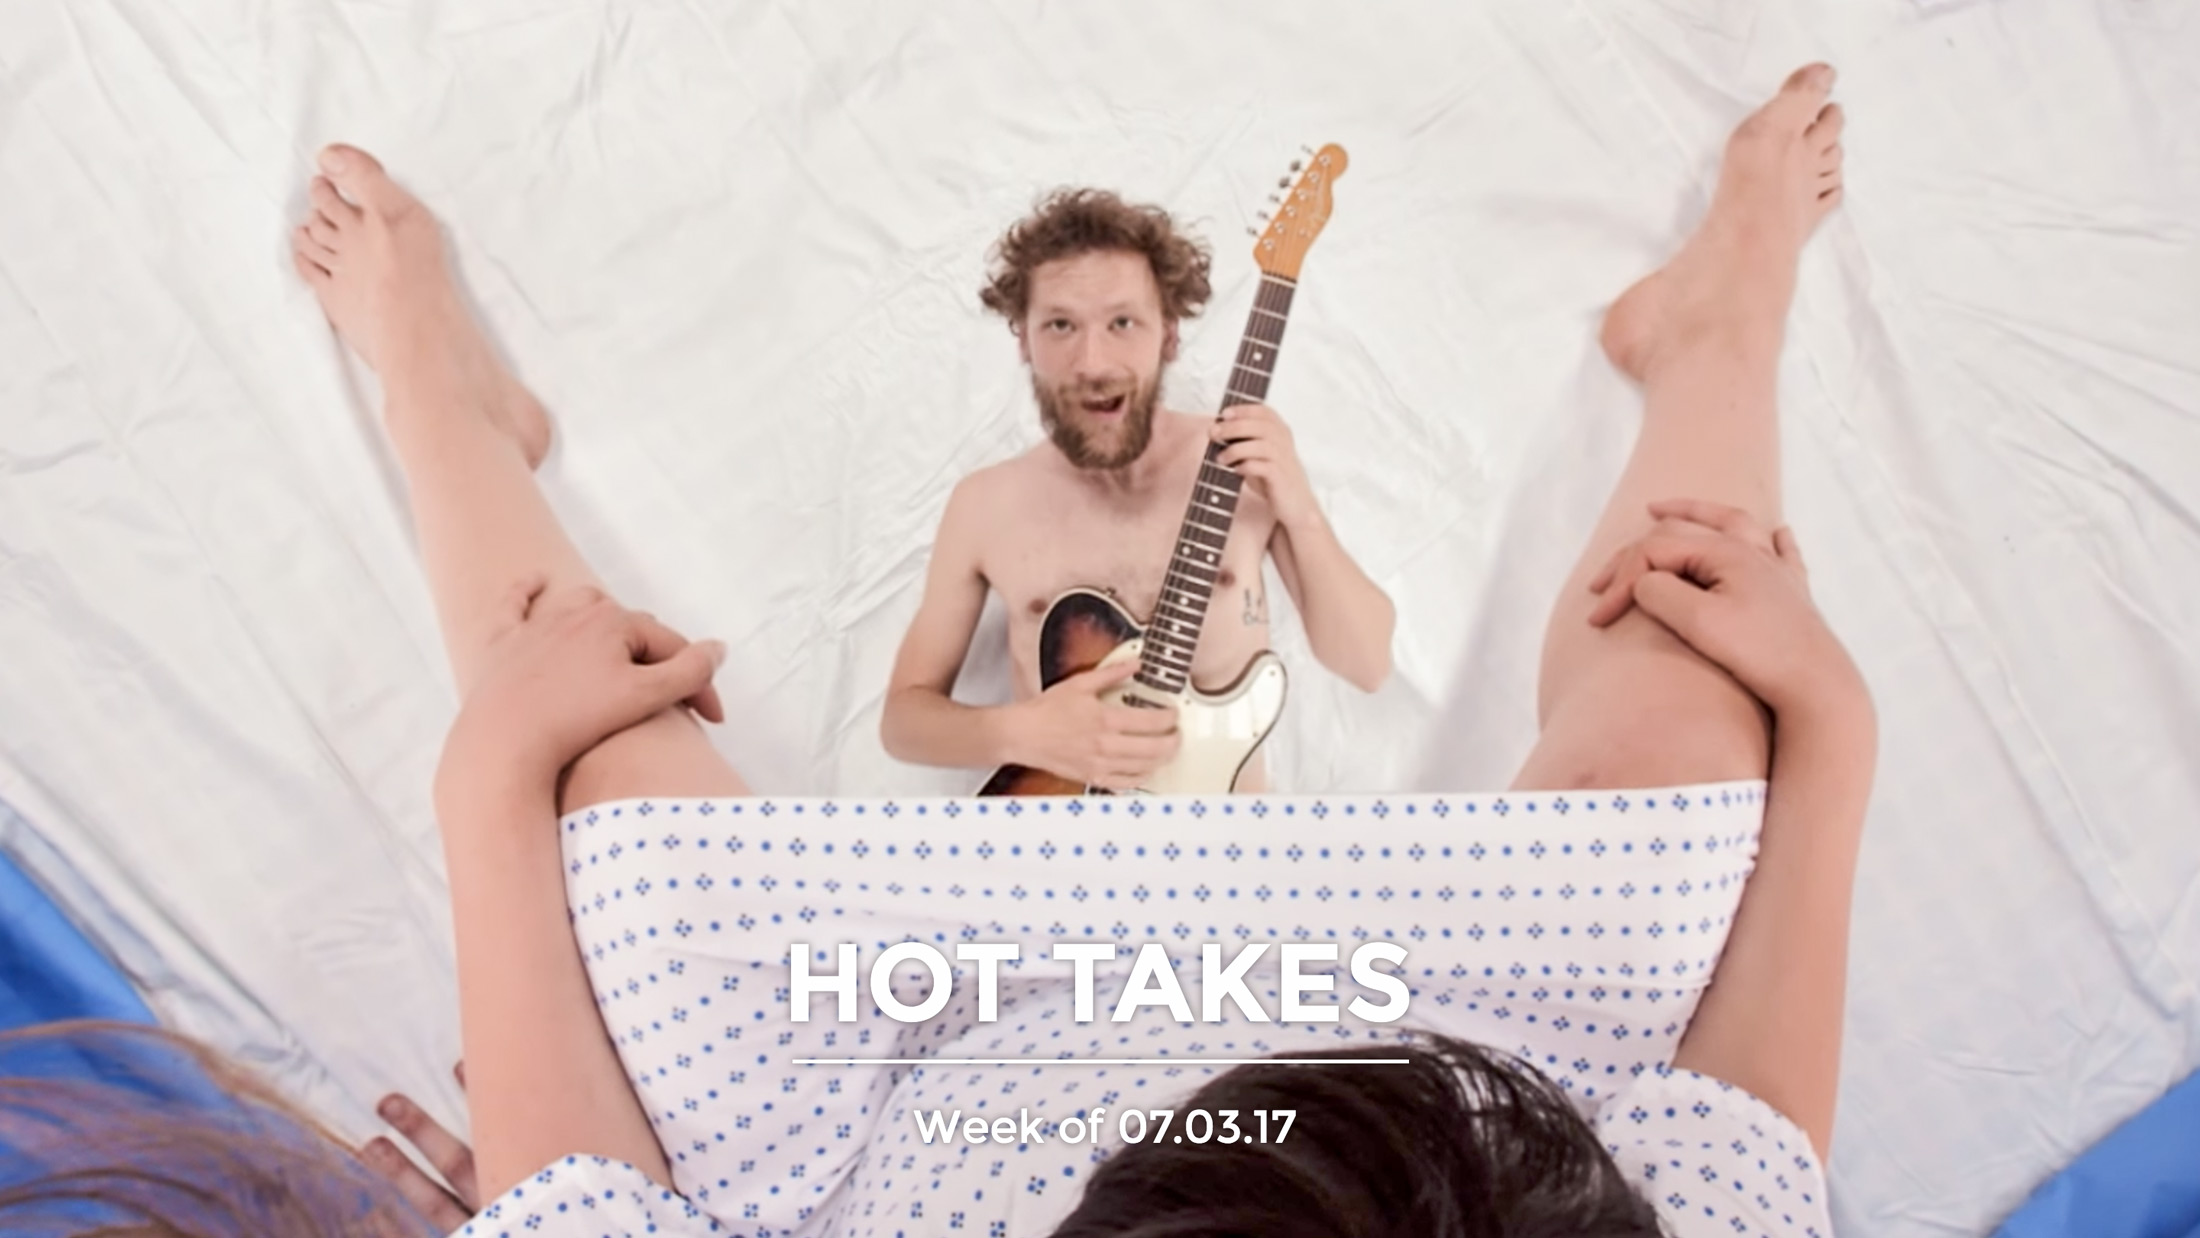 #HotTakes | Week of 07.03.17